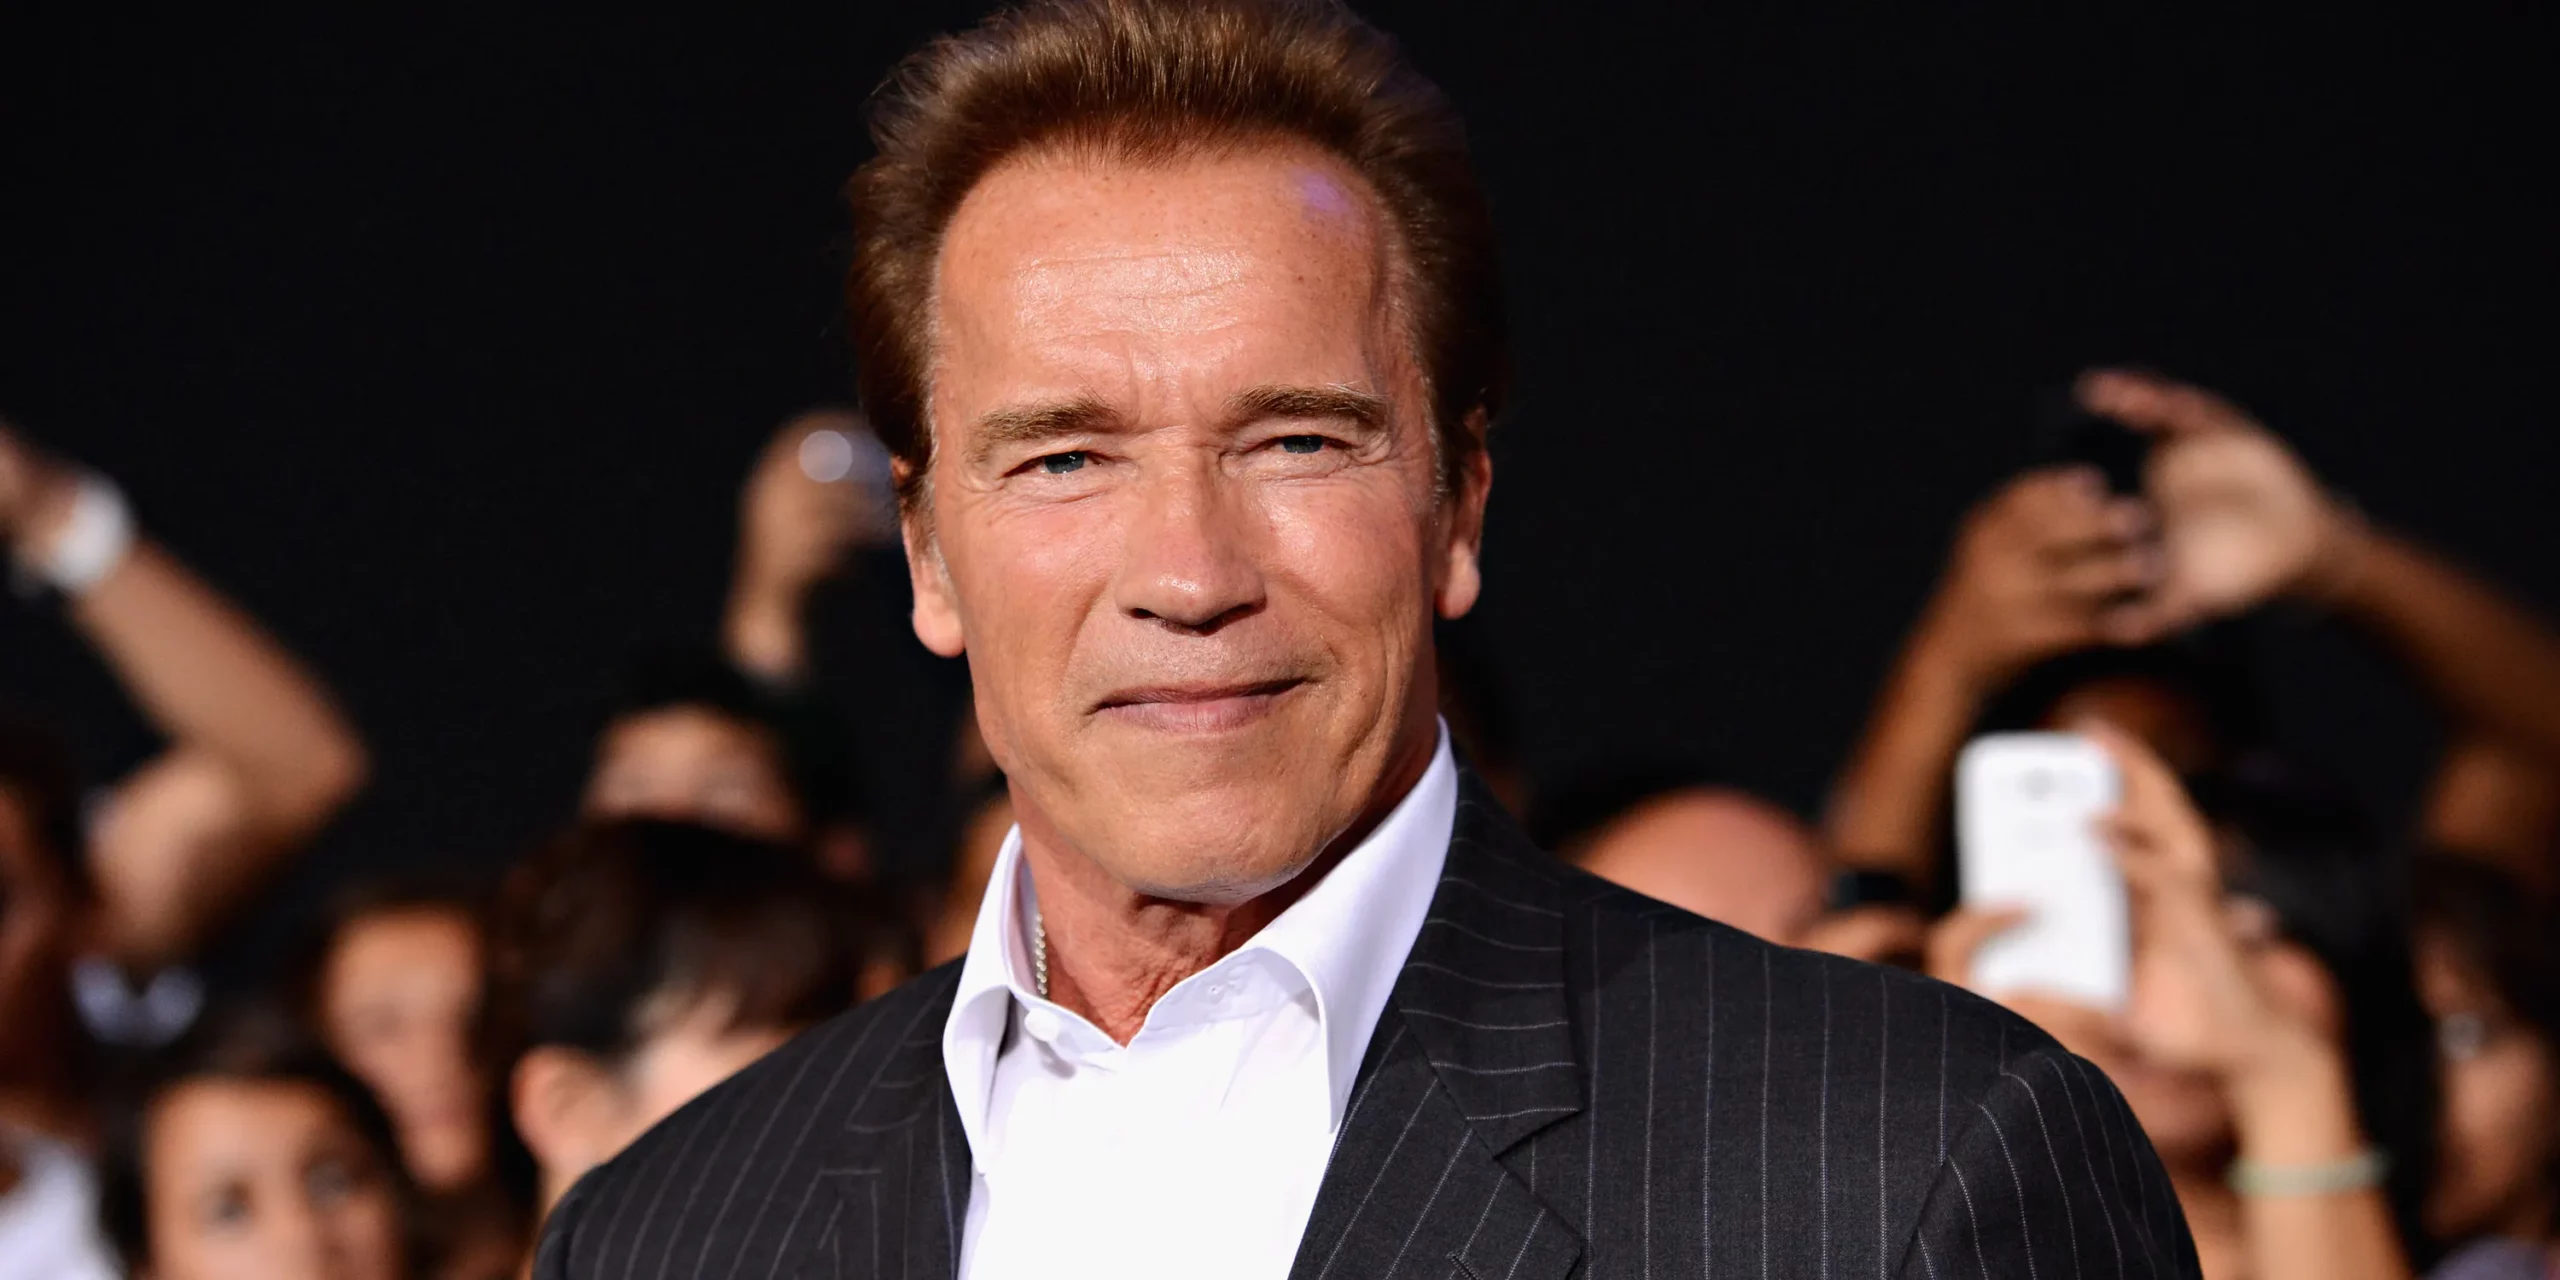 Arnold Schwarzenegger Net Worth - $450 Million, The Austrian Oak